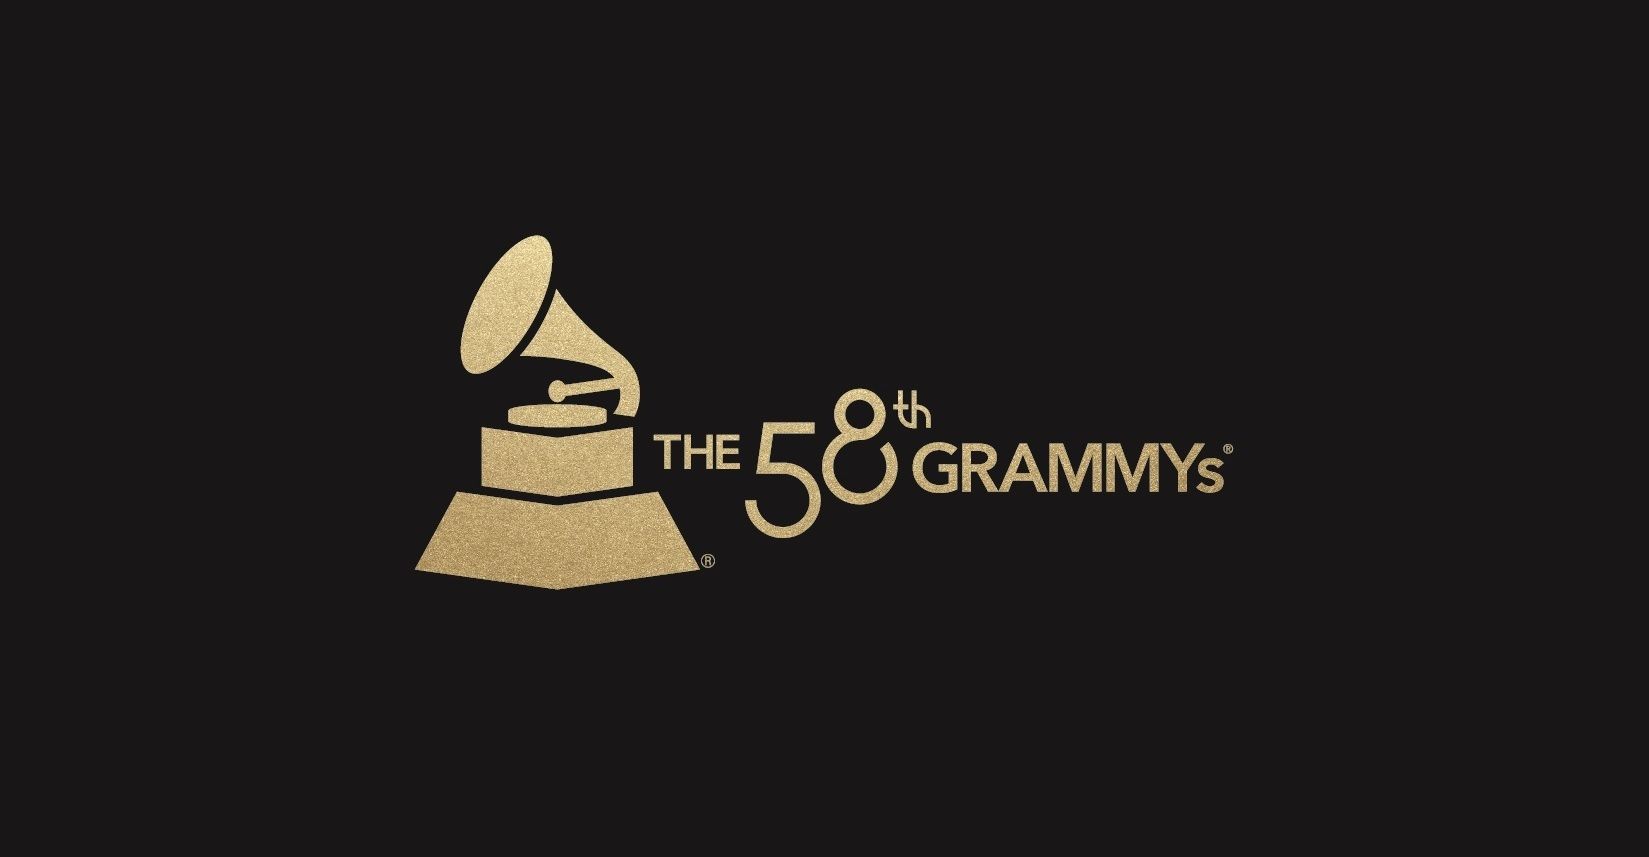 Grammy Wallpaper. Grammy Norma Wallpaper, Grammy Wallpaper and Grammy Award Wallpaper